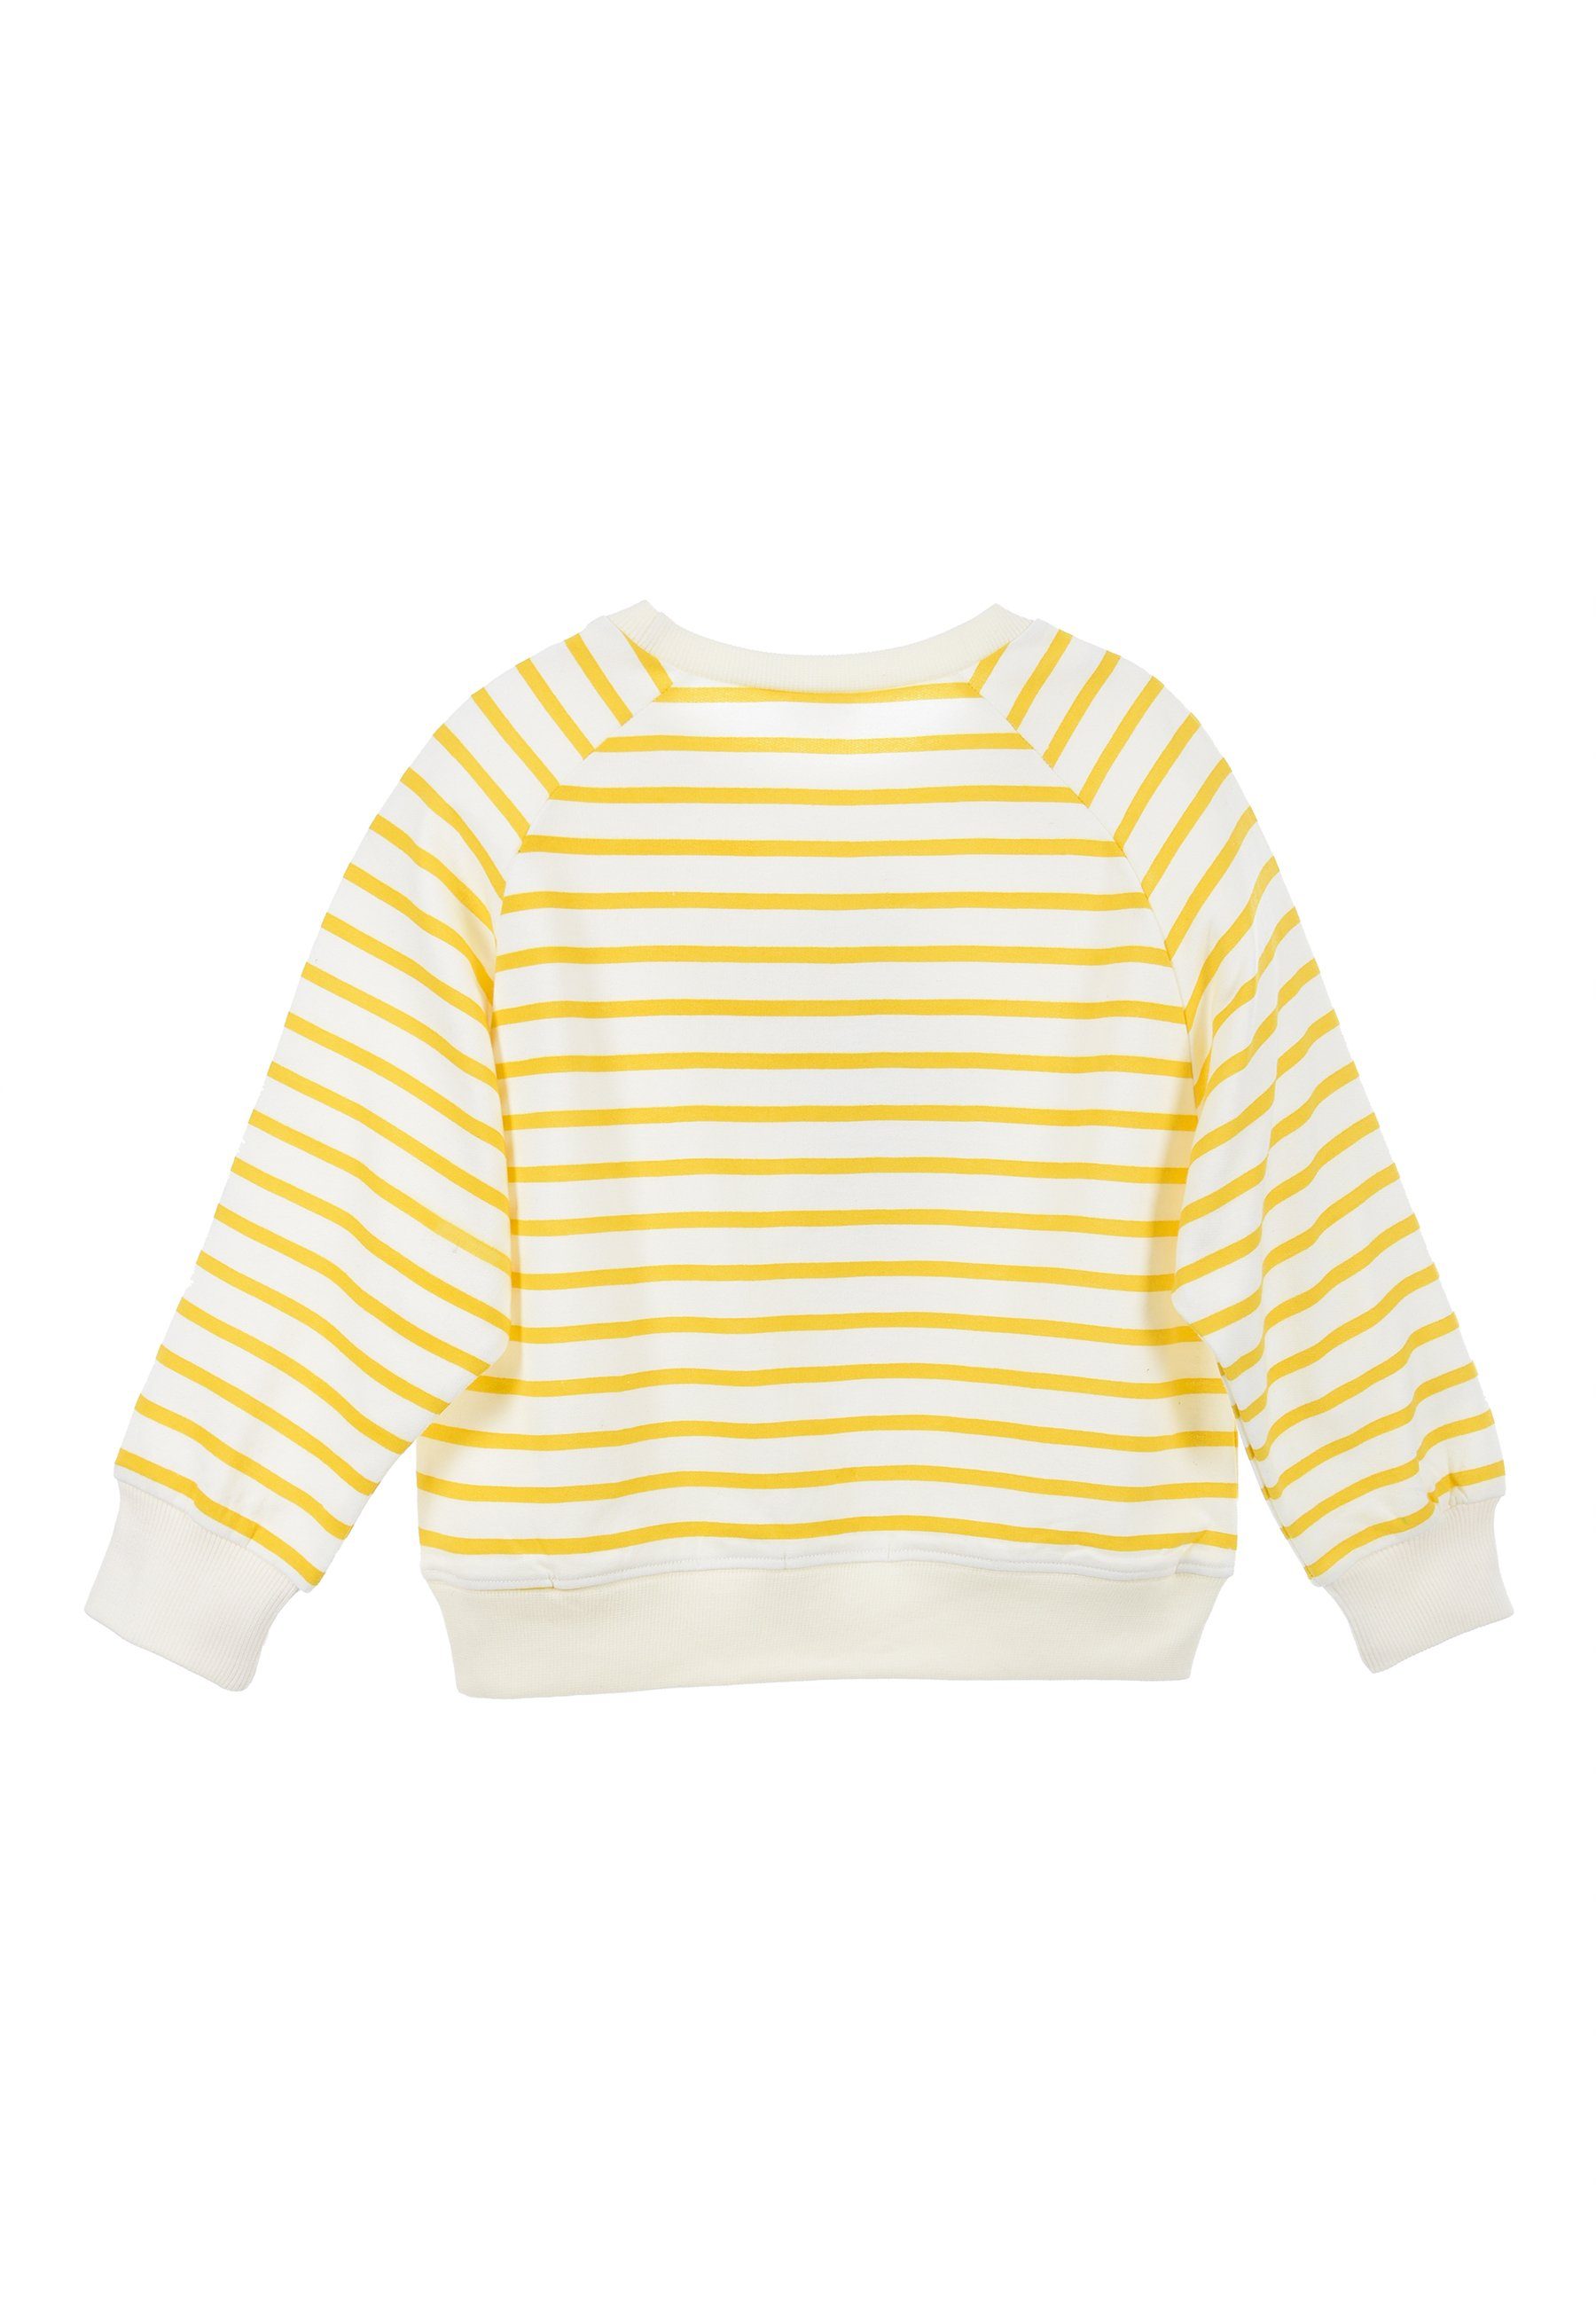 Oberteil Sweatshirt Mini Mädchen Gelb Maus Minnie Disney Mouse Sweatshirt Kinder